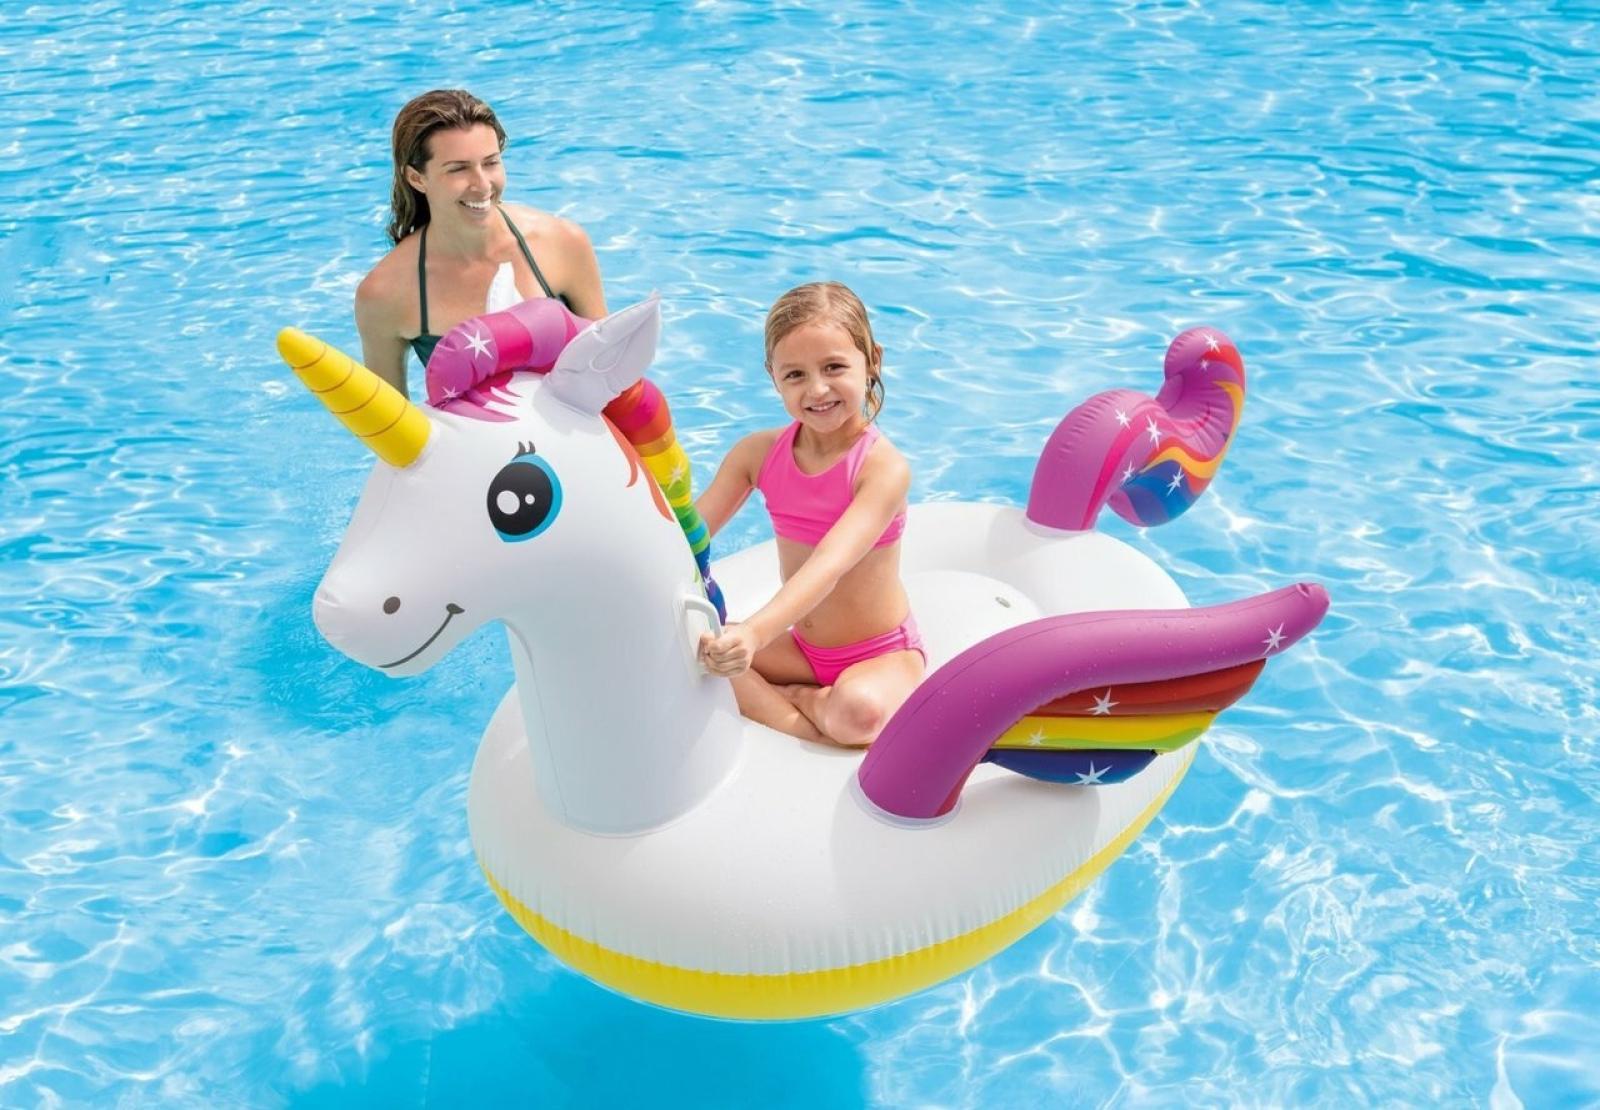 Intex Unicorn Ride-On Inflatable Pool Float